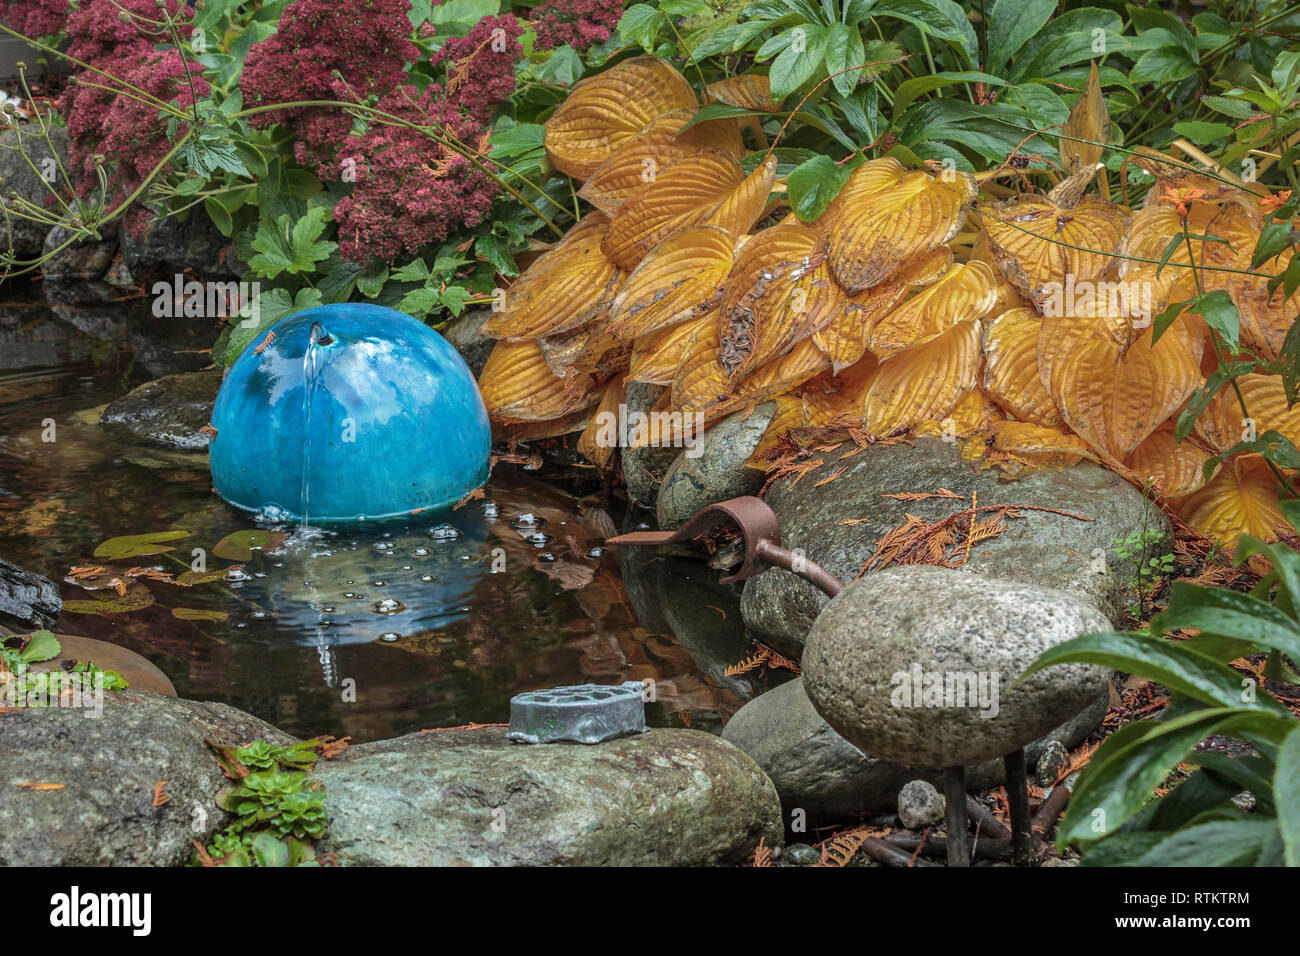 Rochers lisses et le feuillage dense, y compris l'orange vif des hostas, entourent un petit étang de jardin qui dispose d'un round, l'eau en céramique bleue bubbler (automne). Banque D'Images